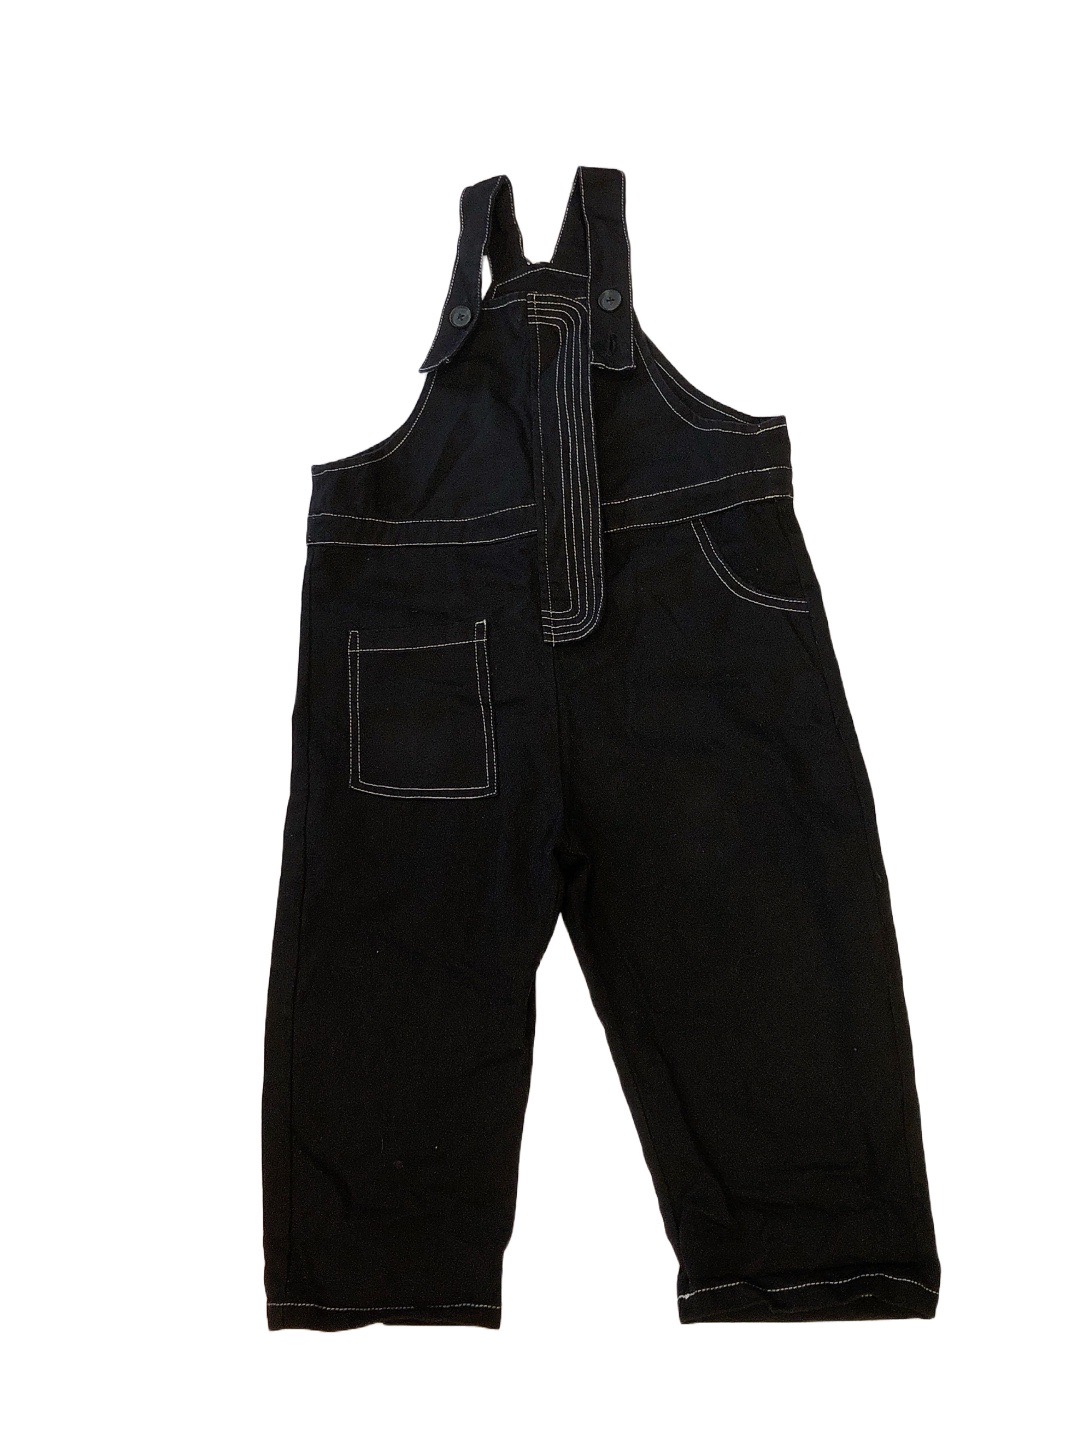 黑色牛仔兒童吊帶褲(110cm)
NT$99